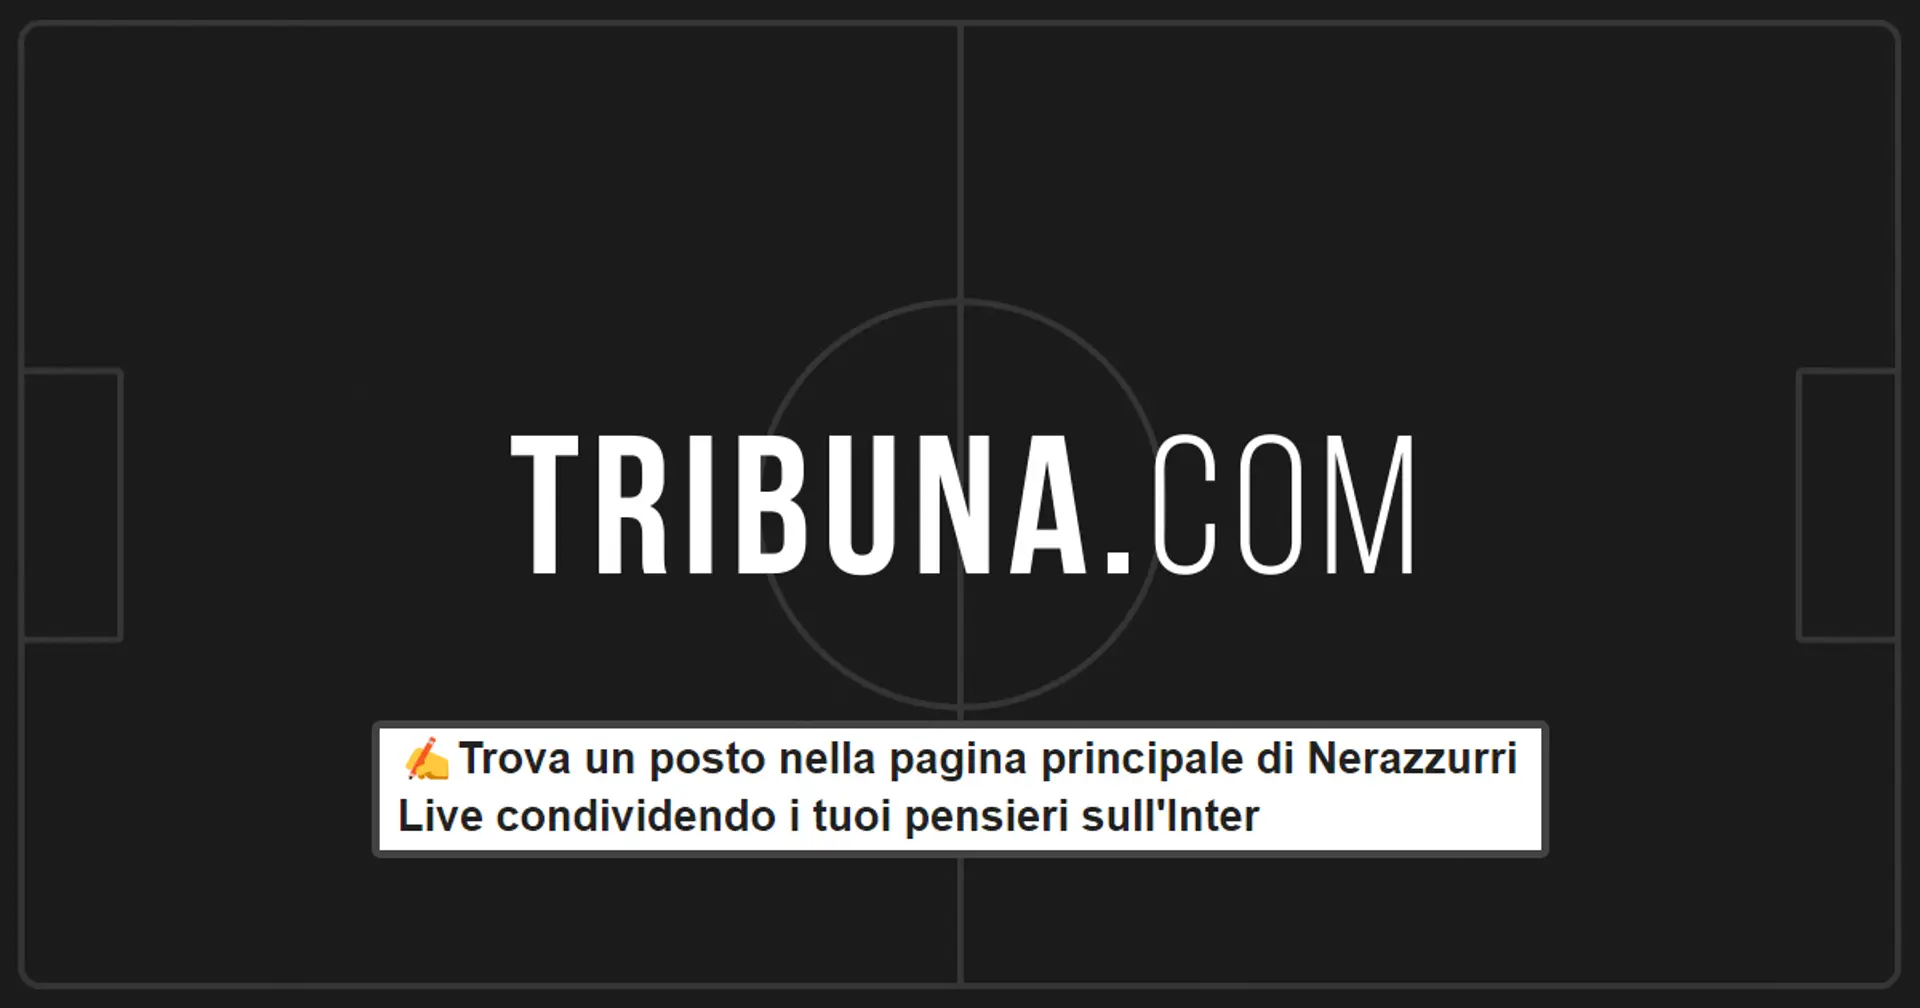 ✍️Trova un posto nella pagina principale di Nerazzurri Live condividendo i tuoi pensieri sull'Inter